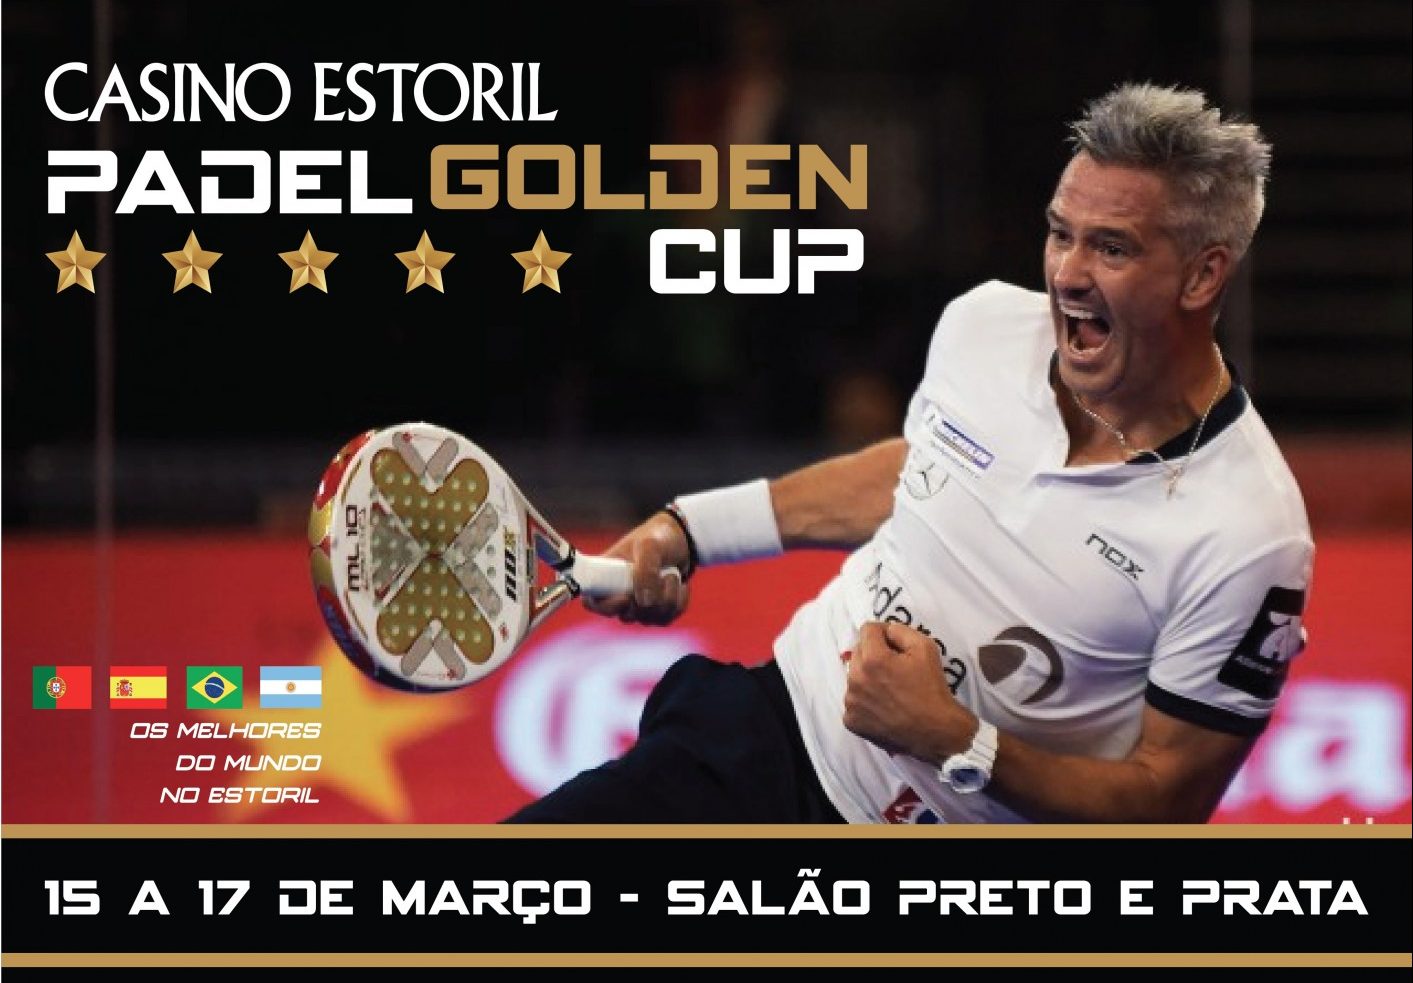 Le Padel Golden Cup kommer att vara världens centrum